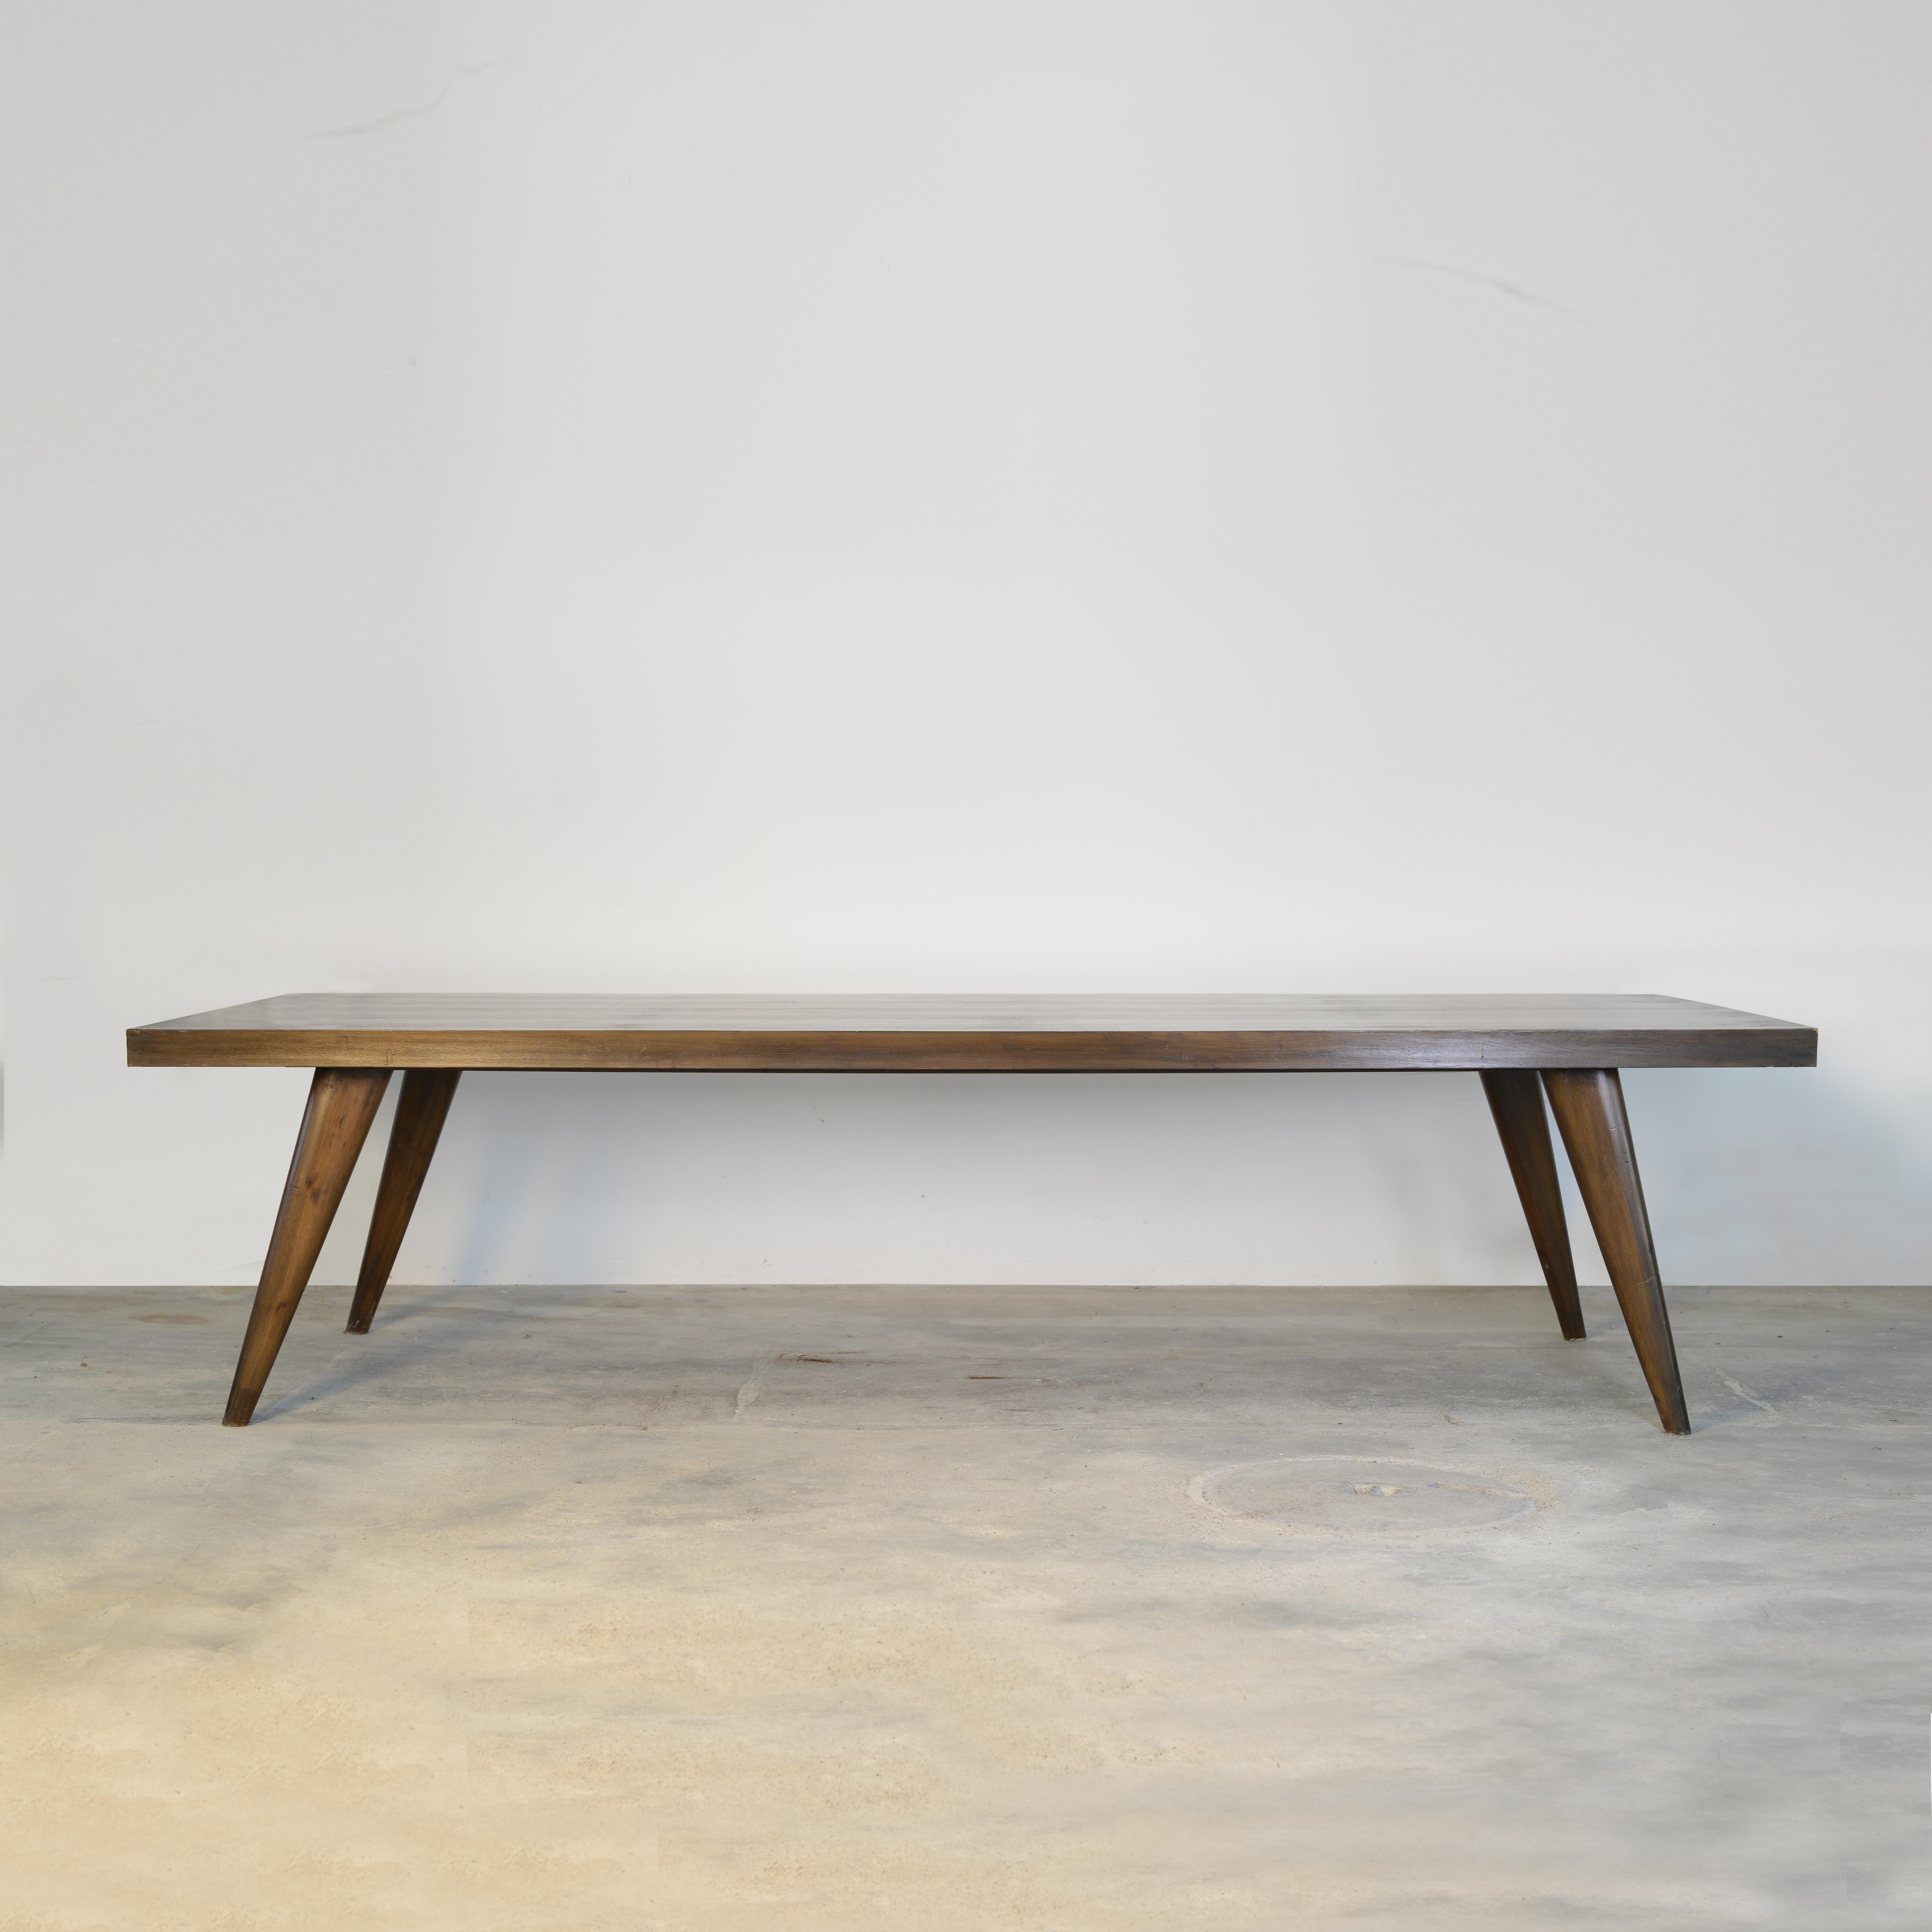 Dieser Tisch ist nicht nur ein fantastisches Stück, sondern auch eine Design-Ikone. Sie ist in ihrer Einfachheit roh und verkörpert und drückt die reinen Ideen aus. Dieses Design hat etwas tief Berührendes und ist gleichzeitig sehr scharf und